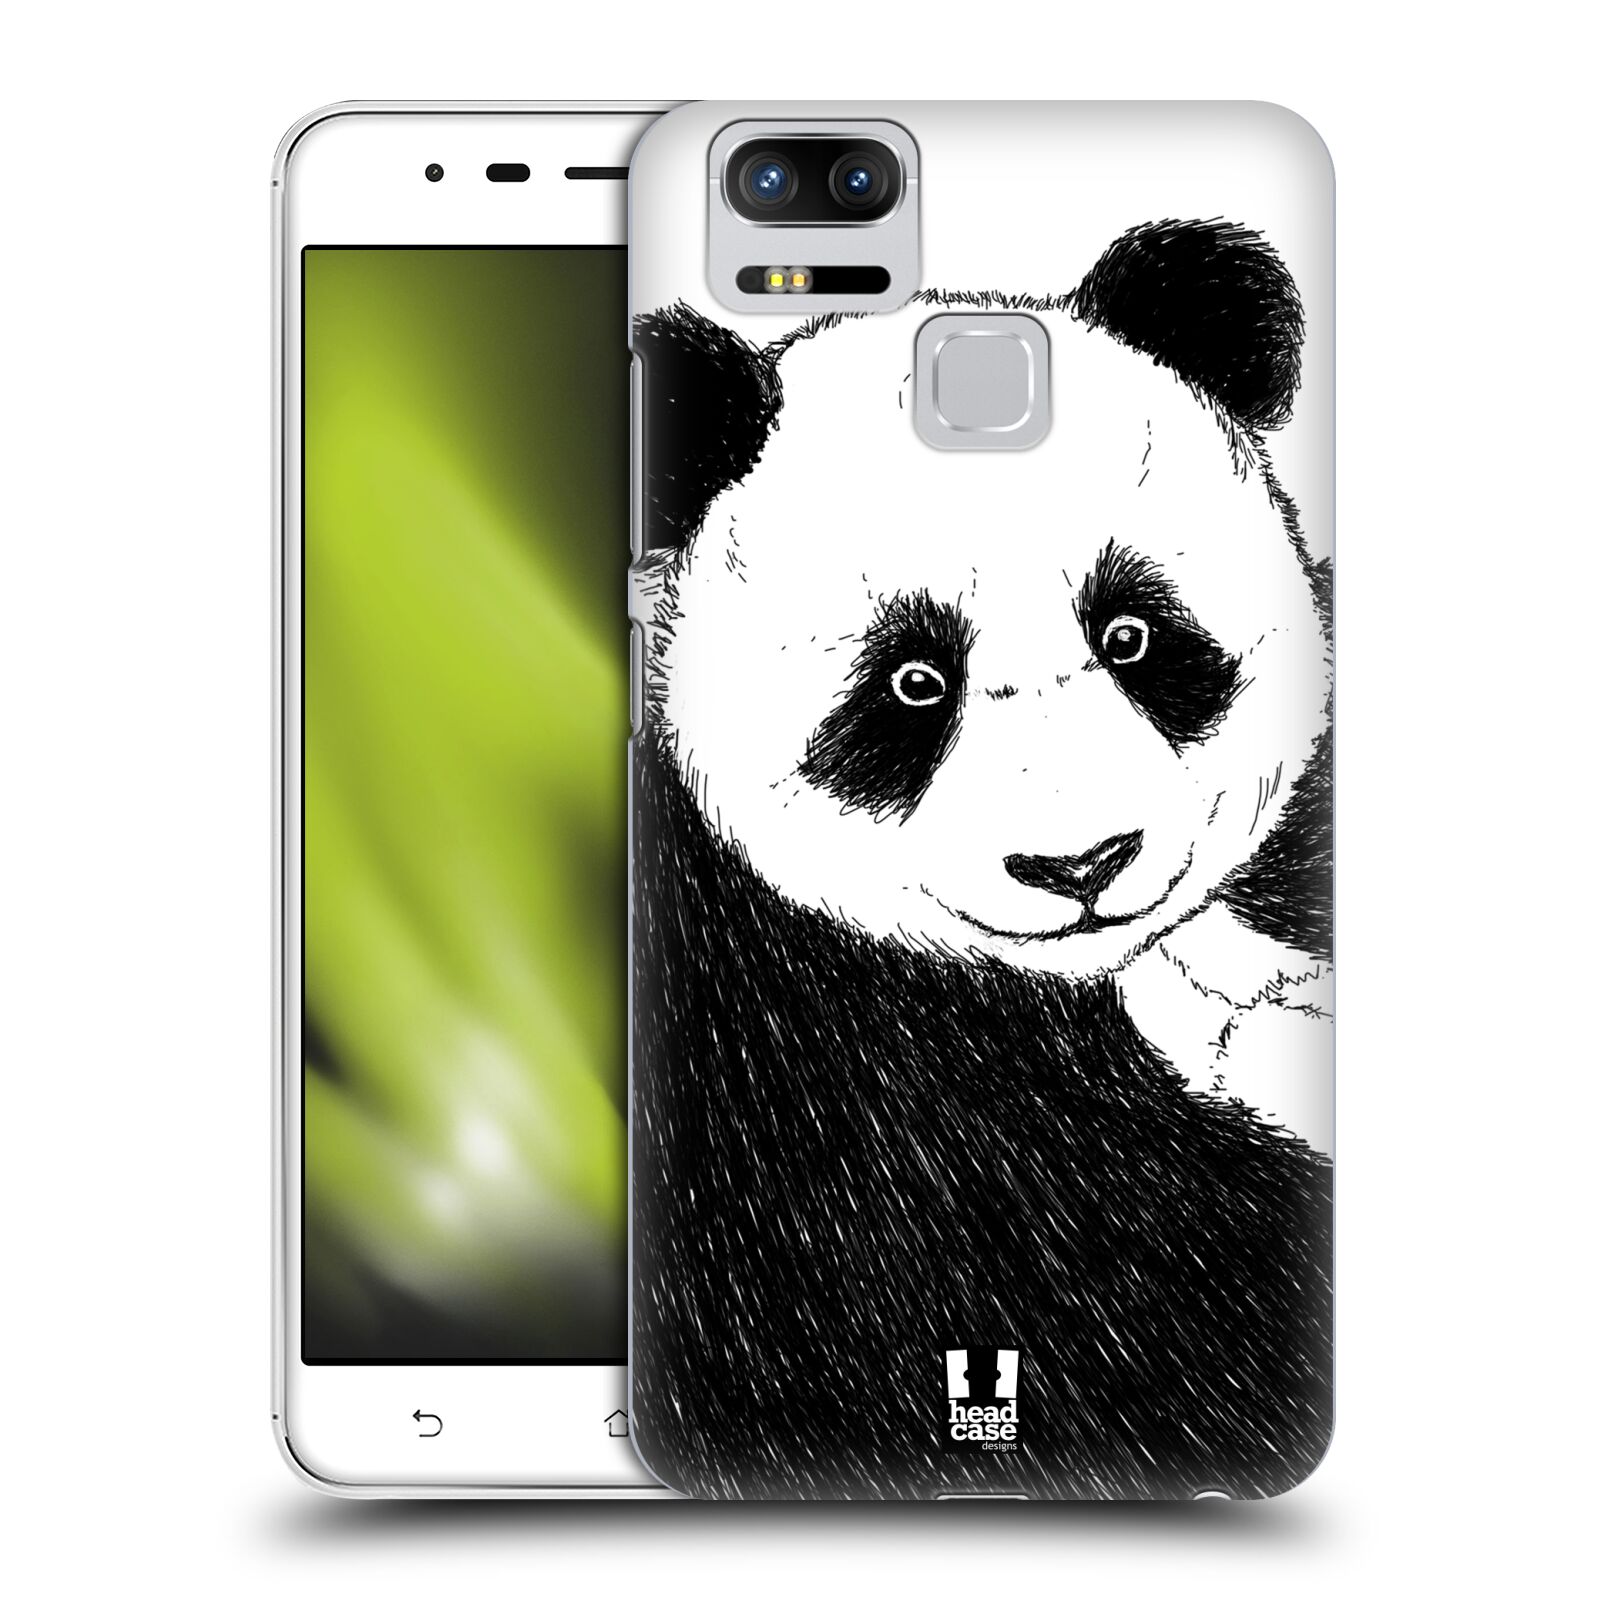 HEAD CASE plastový obal na mobil Asus Zenfone 3 Zoom ZE553KL vzor Kreslená zvířátka černá a bílá panda